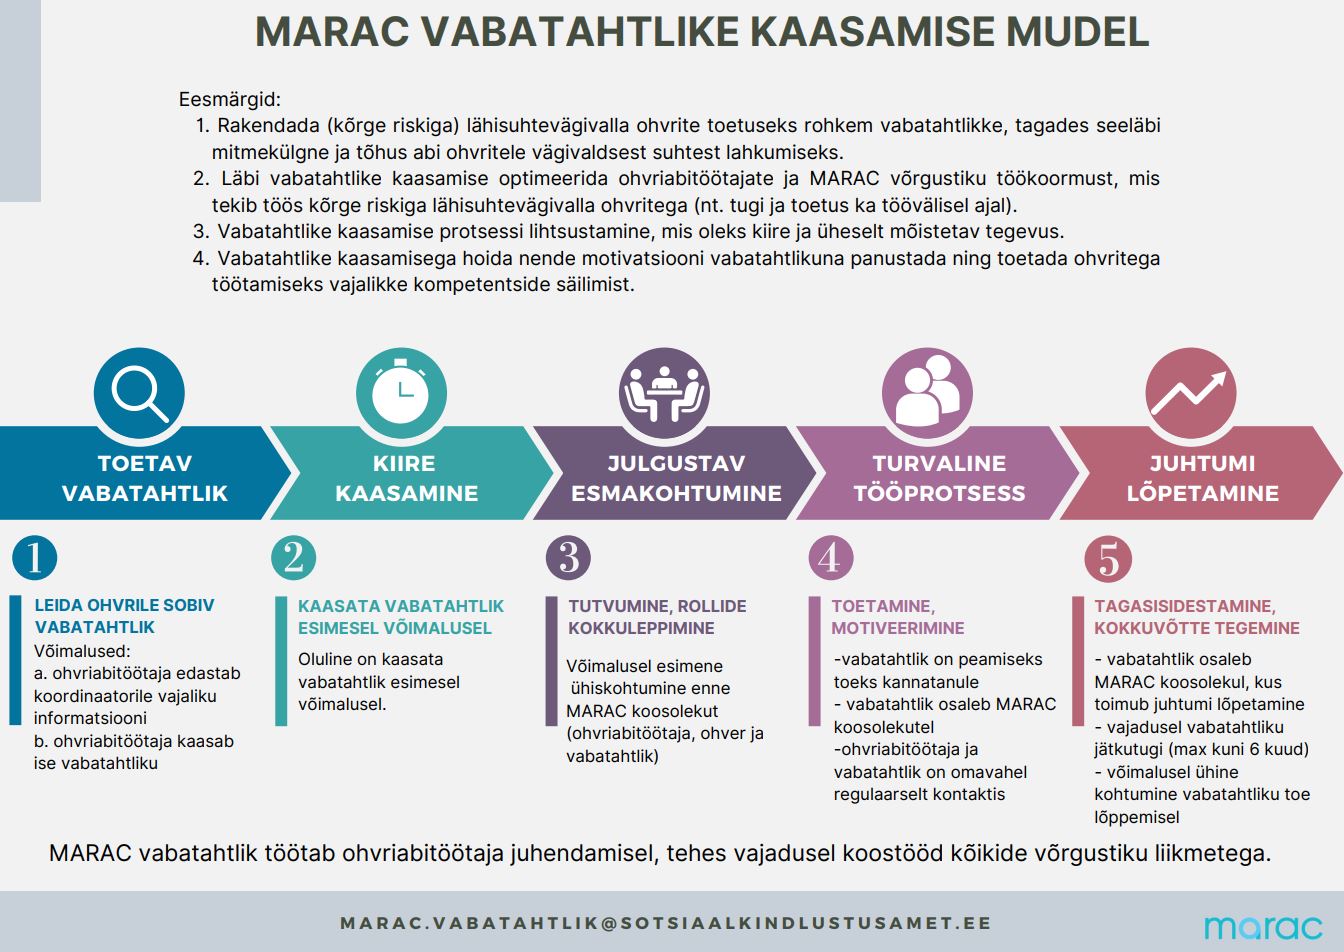 MARAC vabatahtlike kaasamise mudel